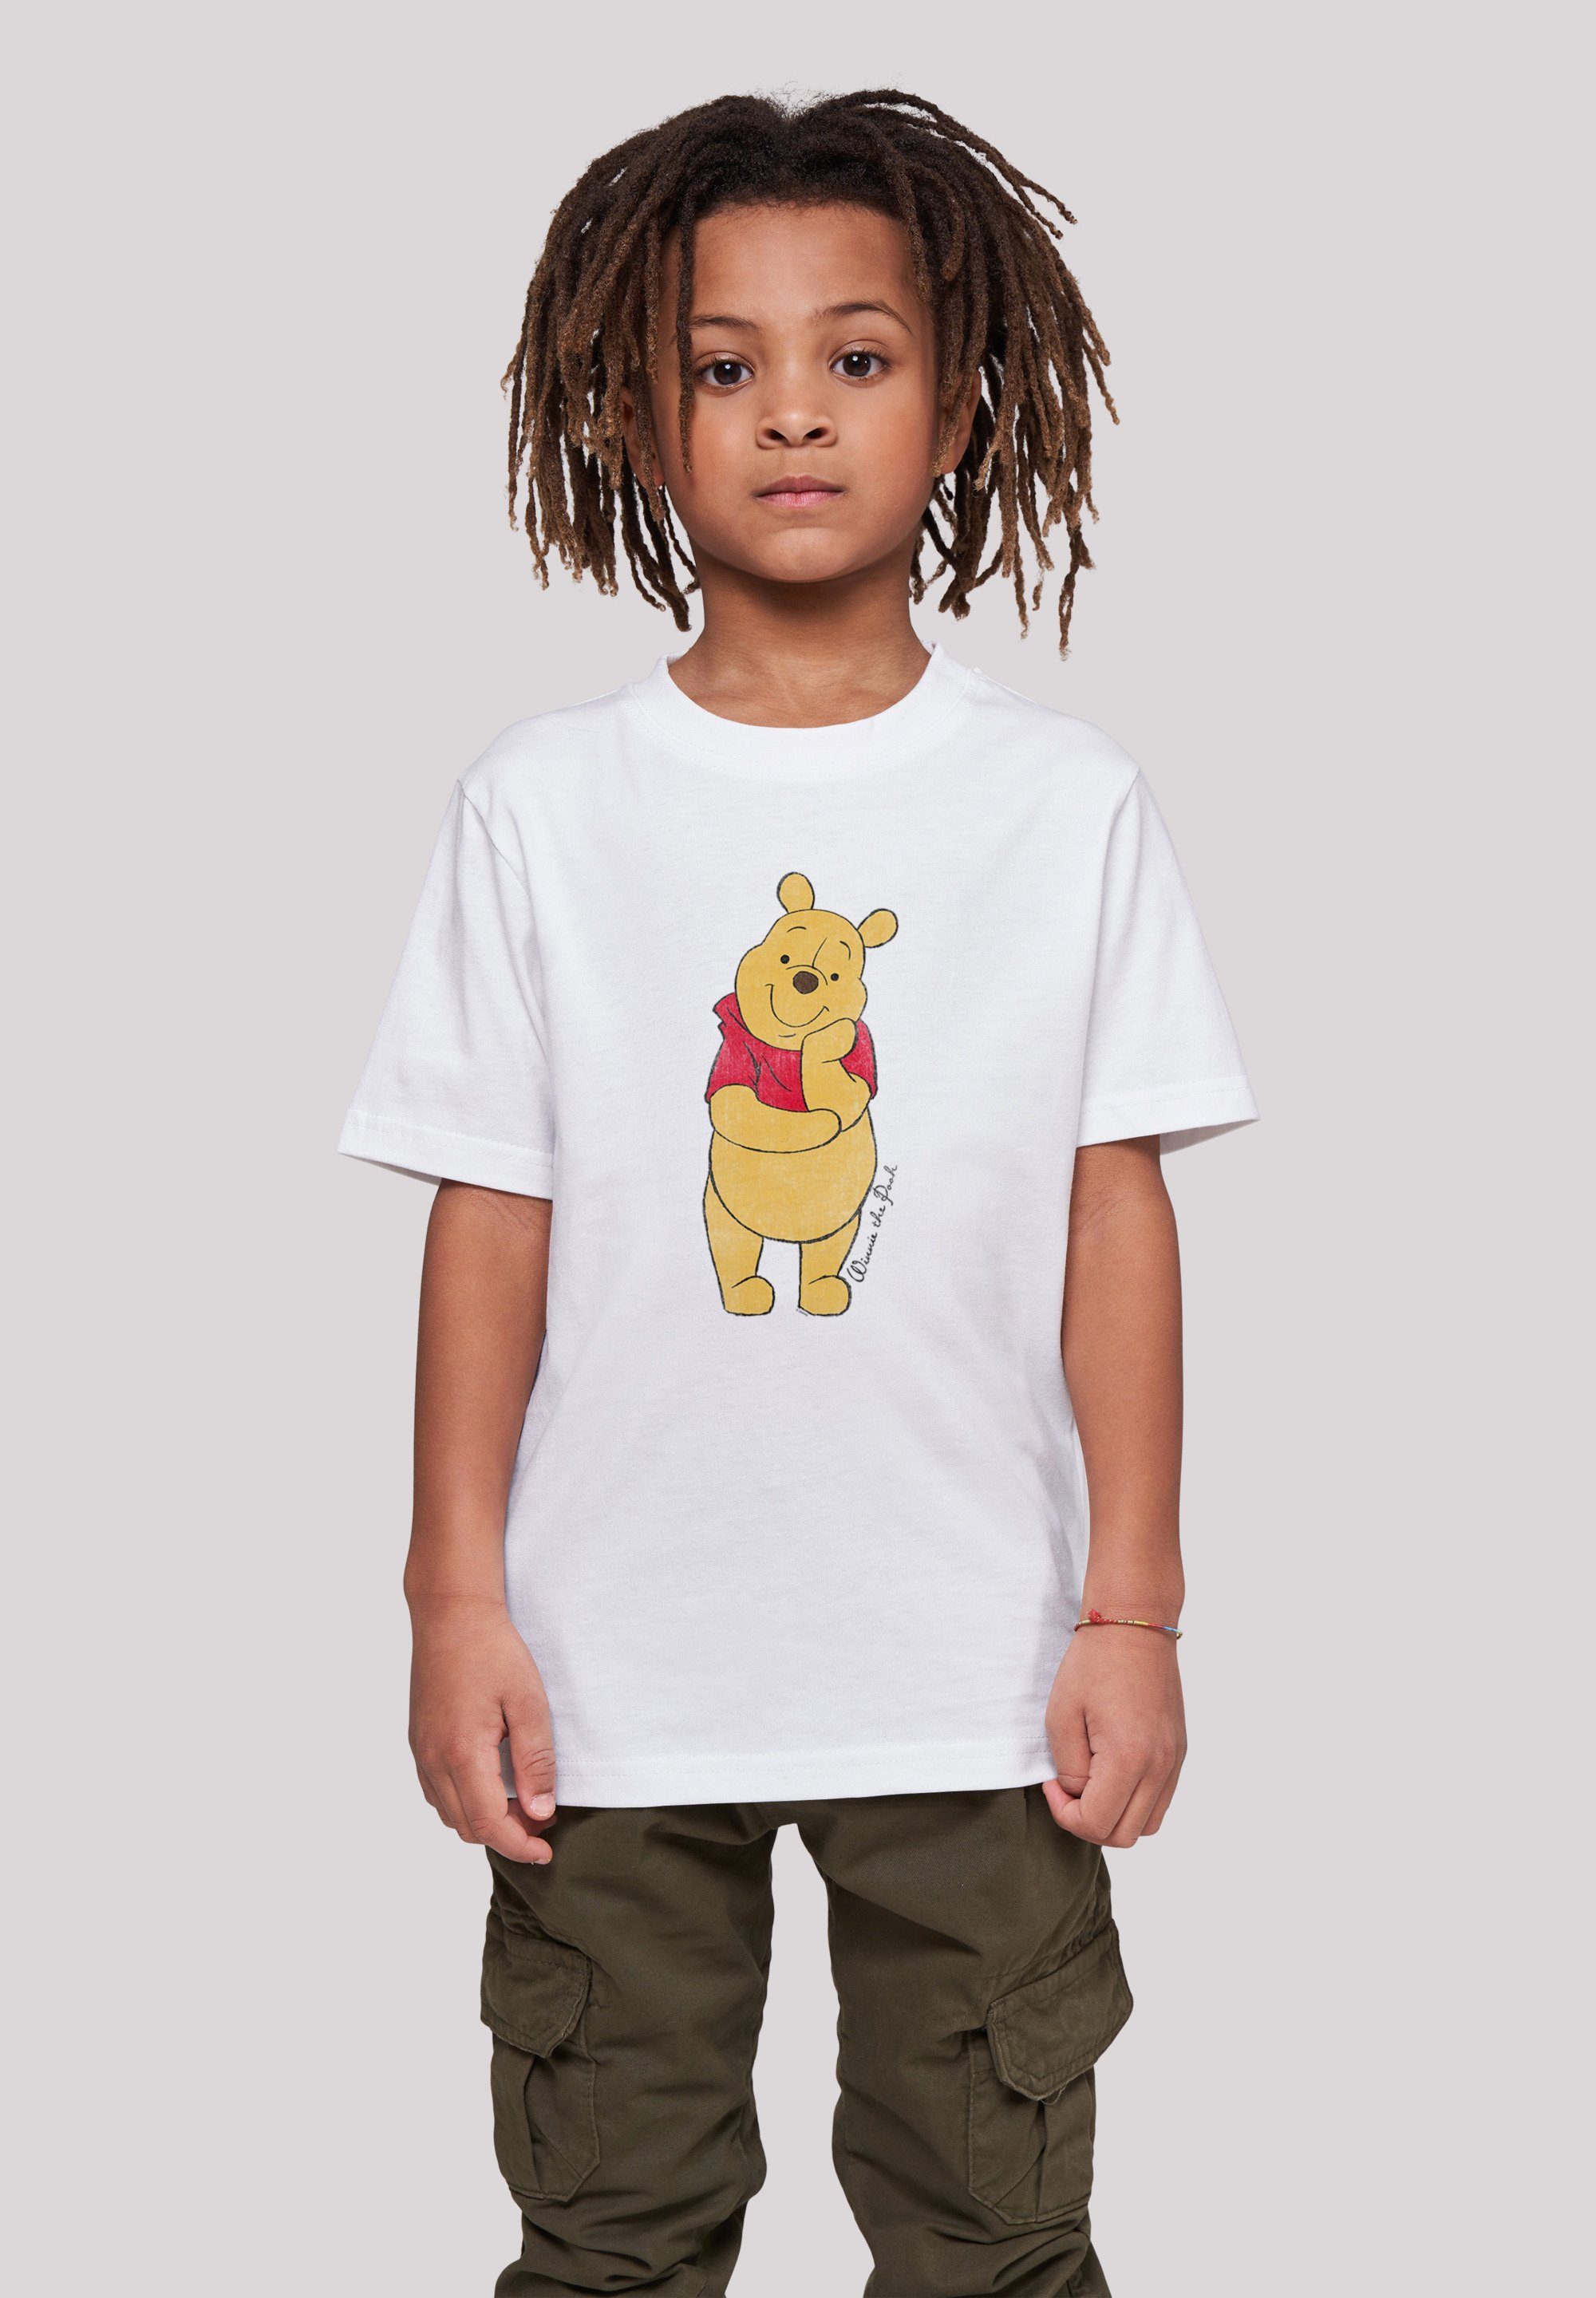 F4NT4STIC T-Shirt Disney Winnie The Pooh Classic Unisex Kinder,Premium Merch,Jungen,Mädchen,Bedruckt weiß